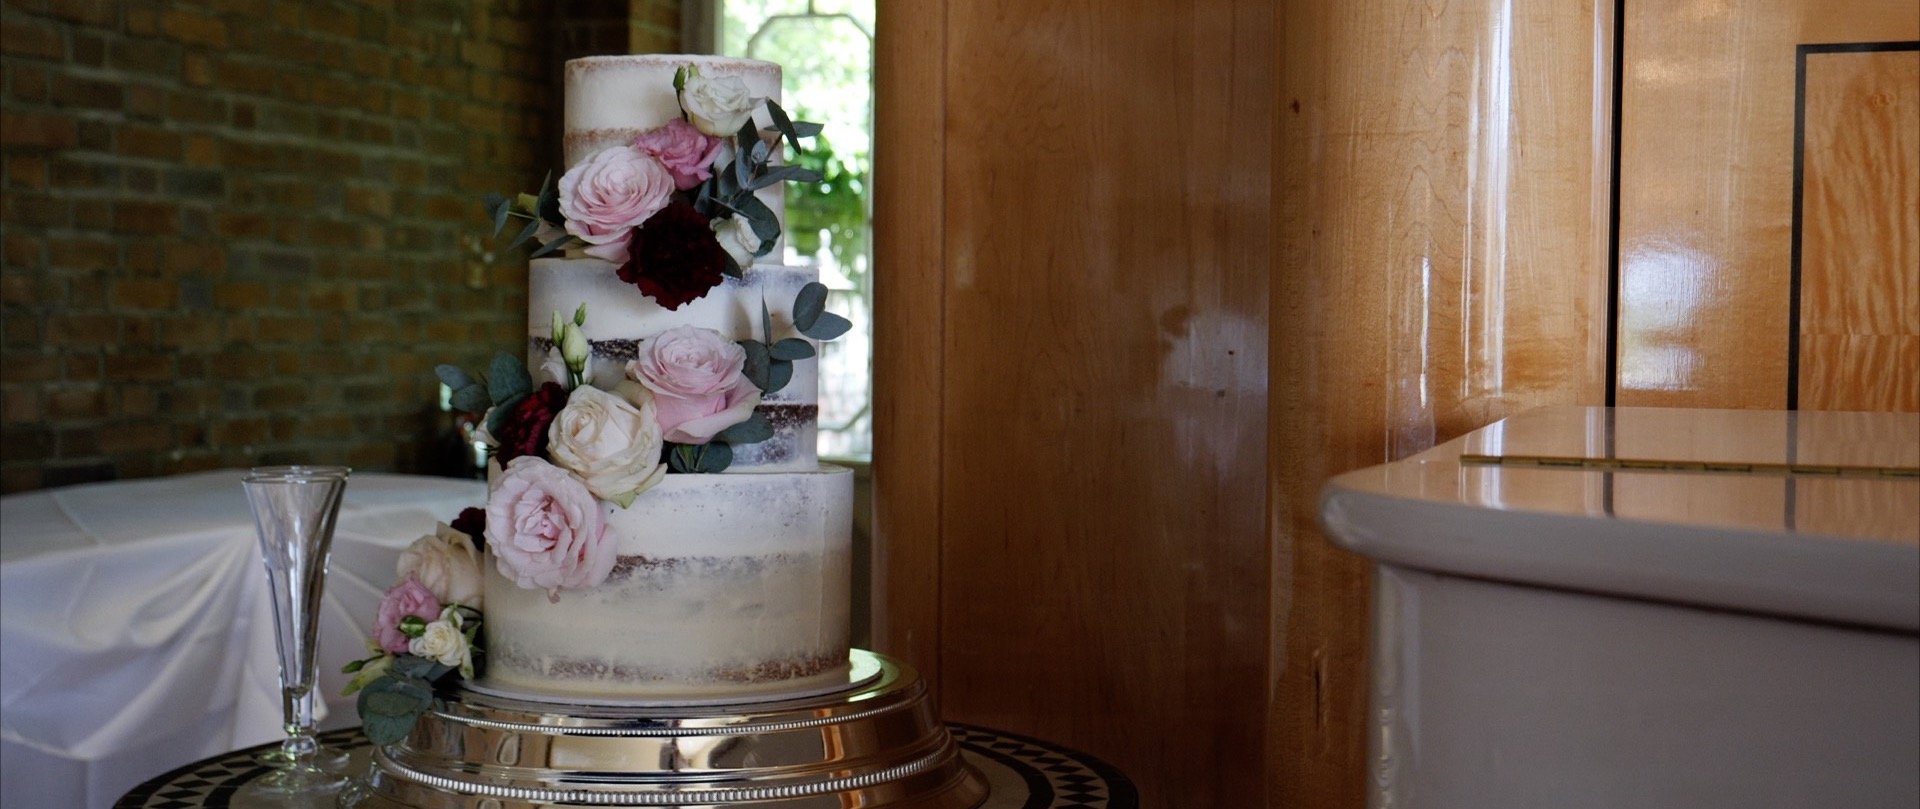 Wedding cake video Essex weddings.jpg